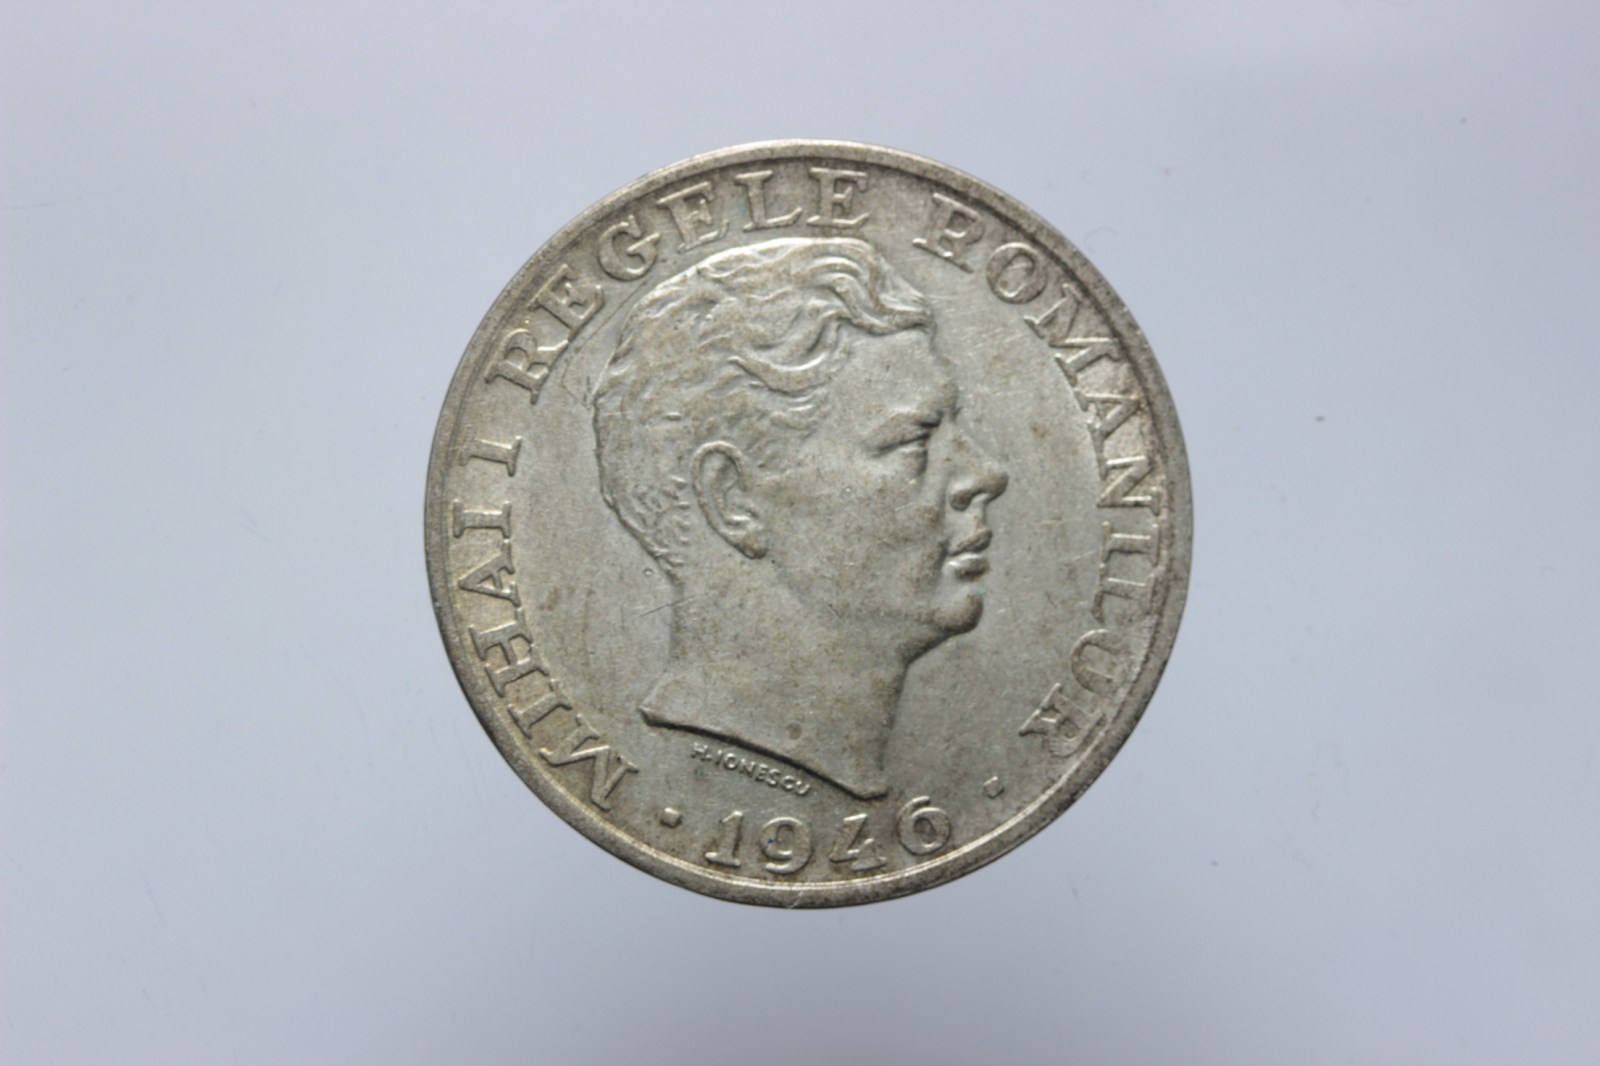 ROMANIA MIHAI I 25000 LEI 1946 SPL++